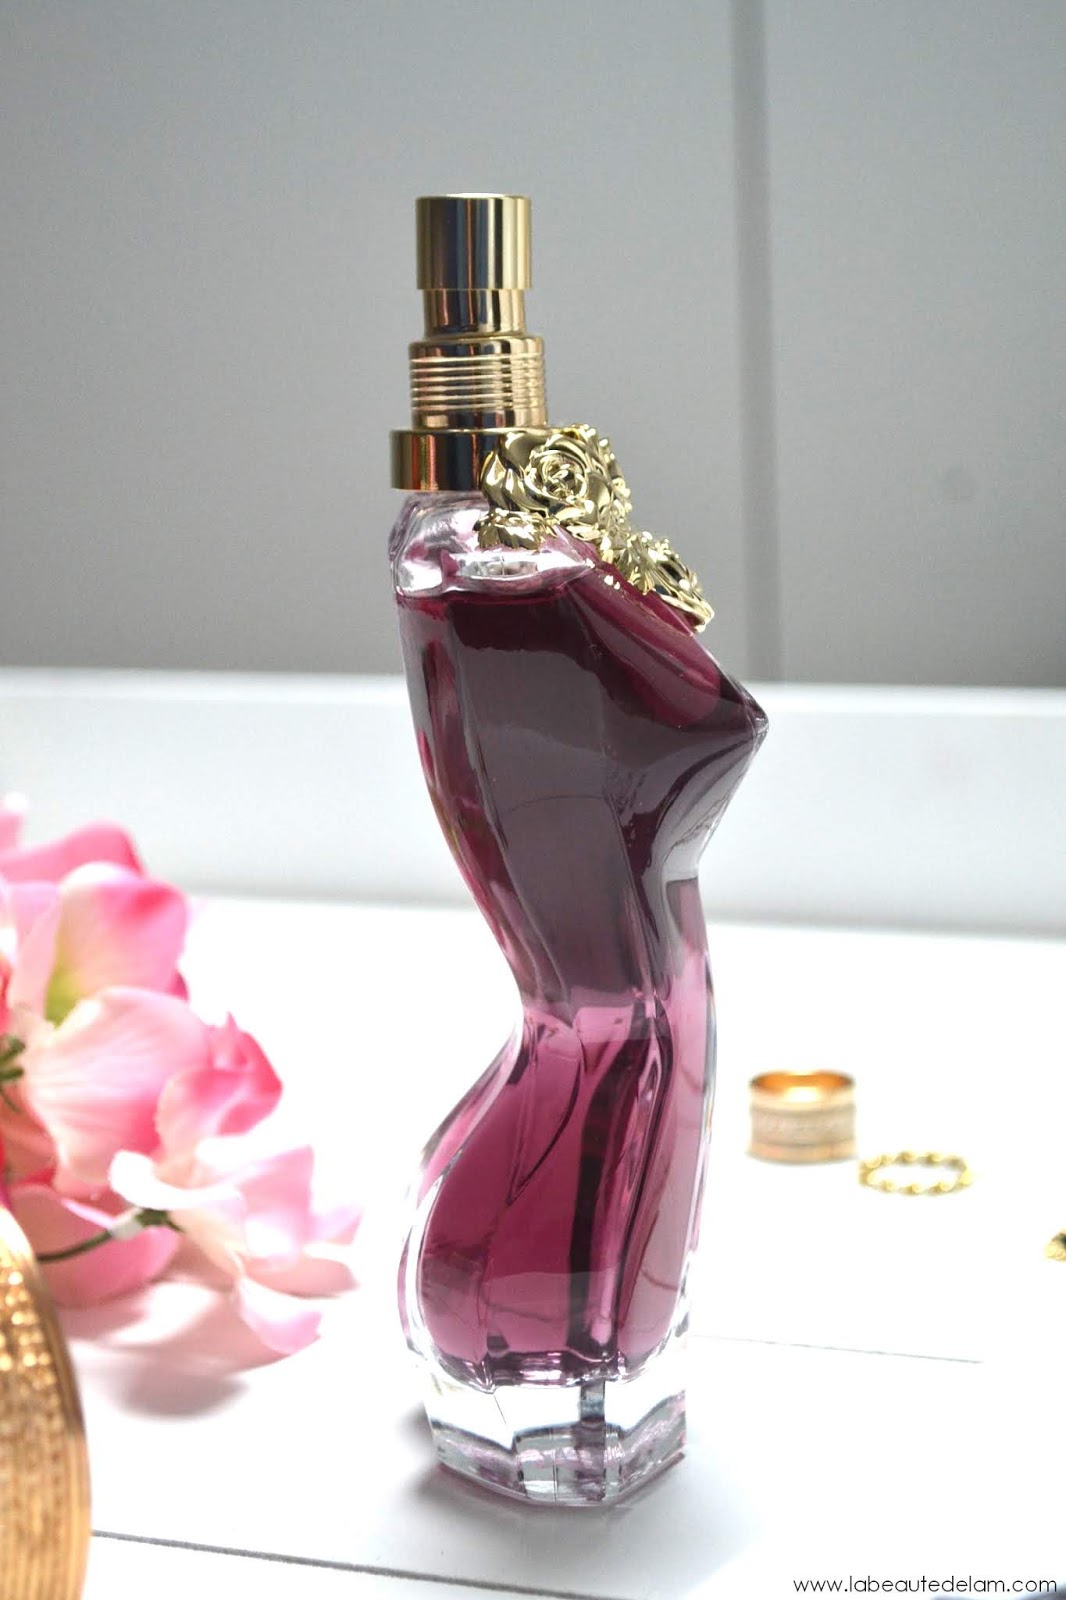 La Belle, le nouveau parfum féminin de Jean-Paul Gaultier